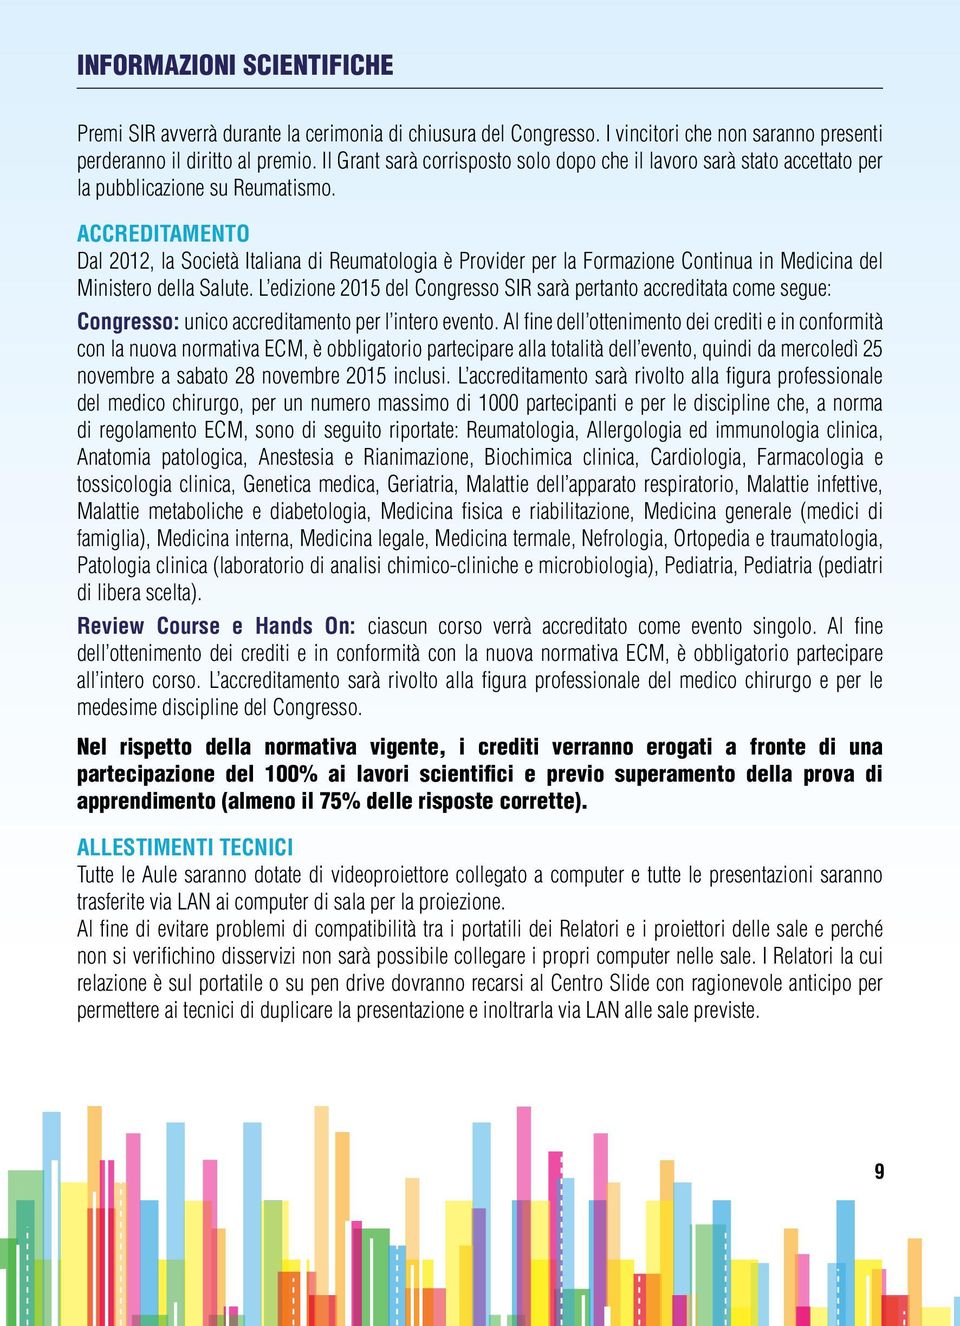 ACCREDITAMENTO Dal 2012, la Società Italiana di Reumatologia è Provider per la Formazione Continua in Medicina del Ministero della Salute.